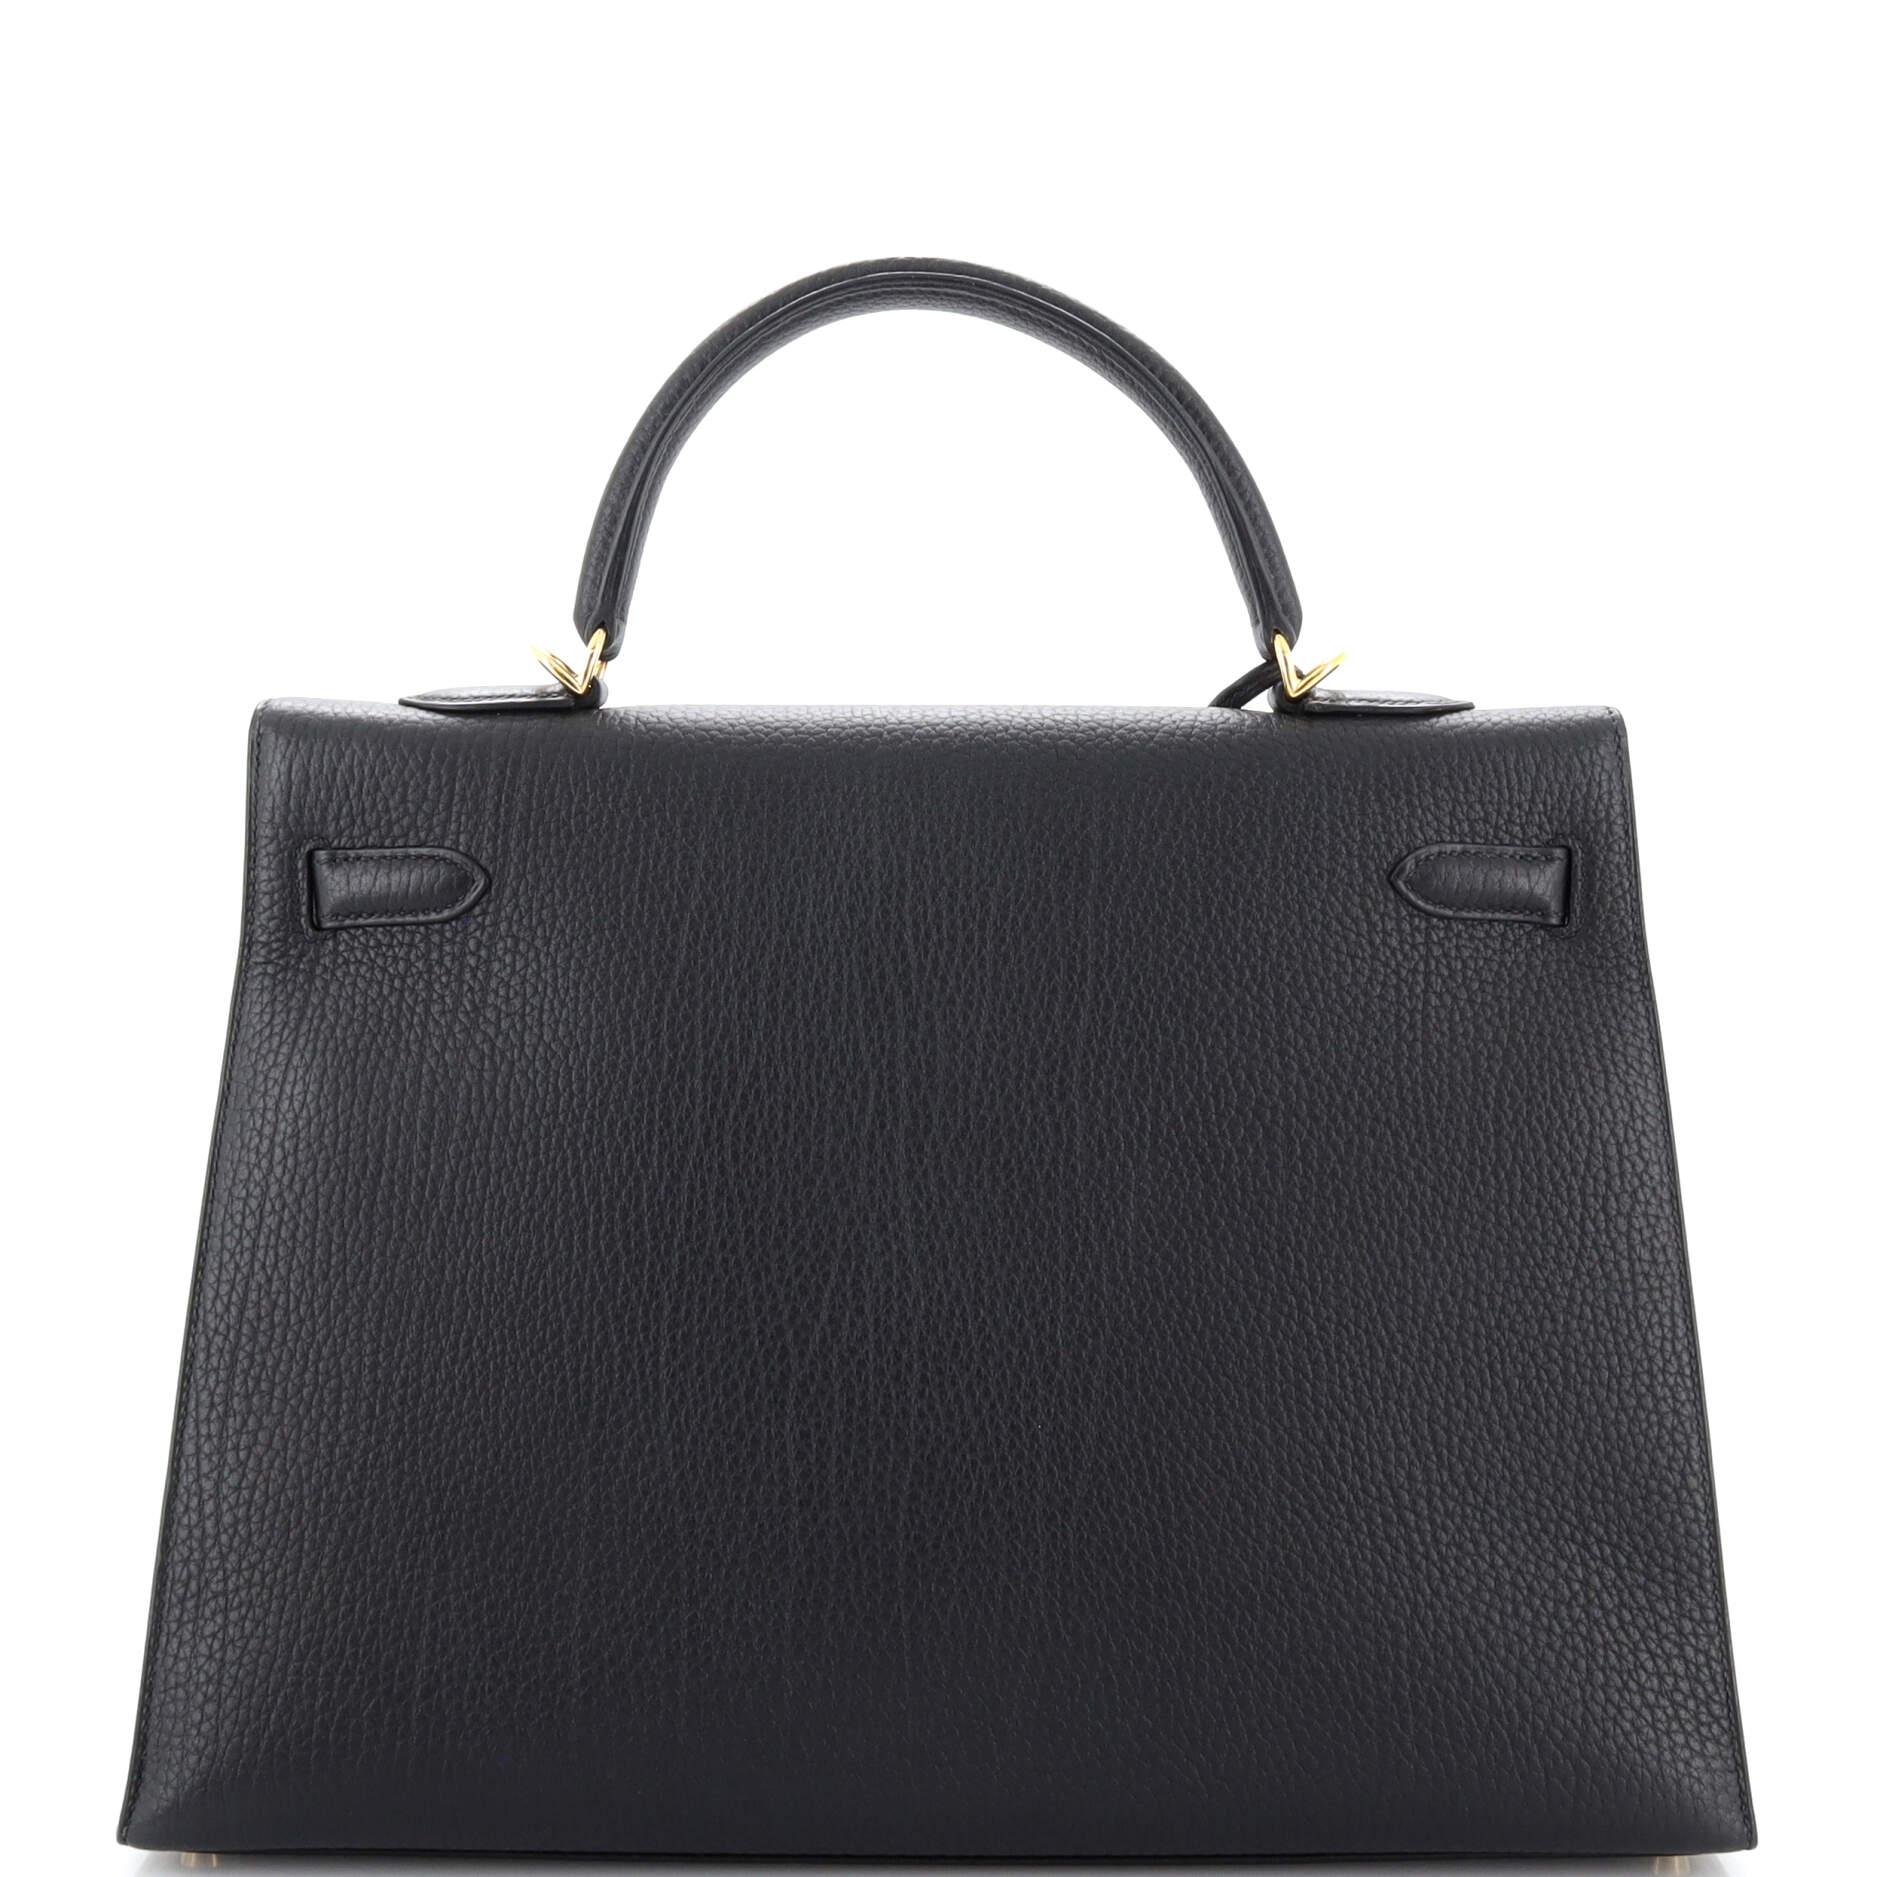 Women's Hermes Kelly Handbag Noir Fjord with Gold Hardware 35